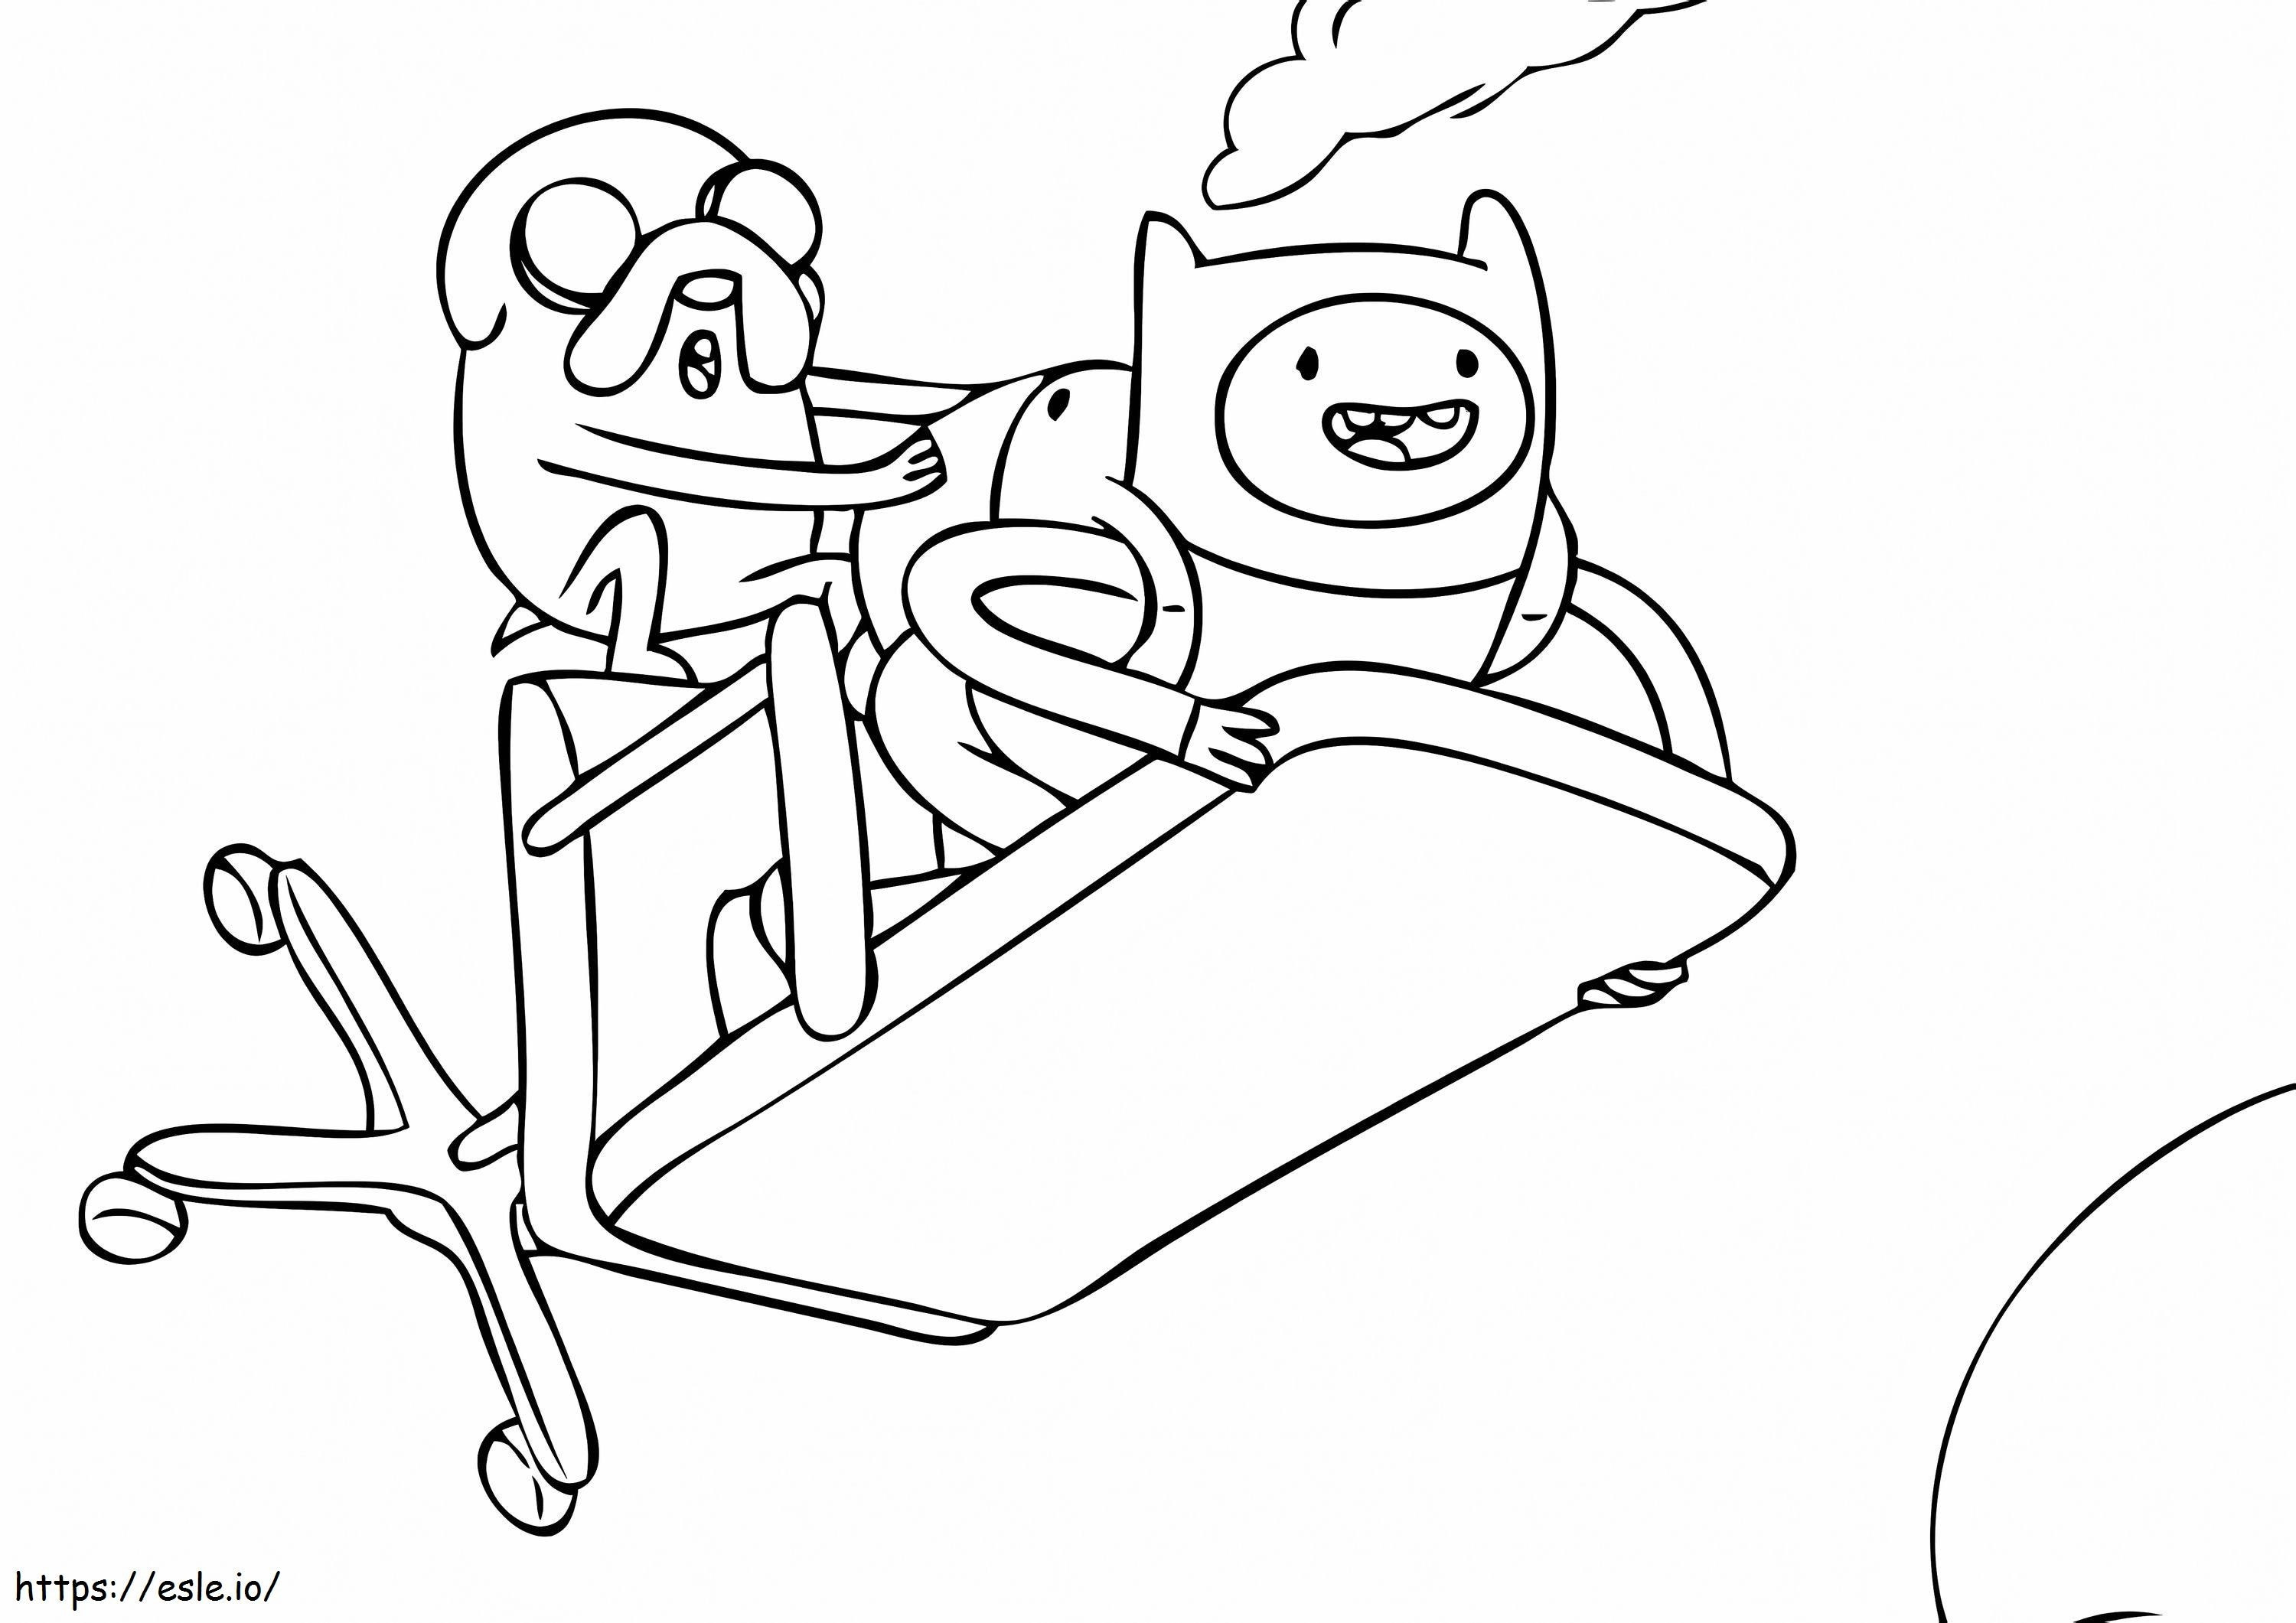 Finn e Jack volano con una sedia da colorare